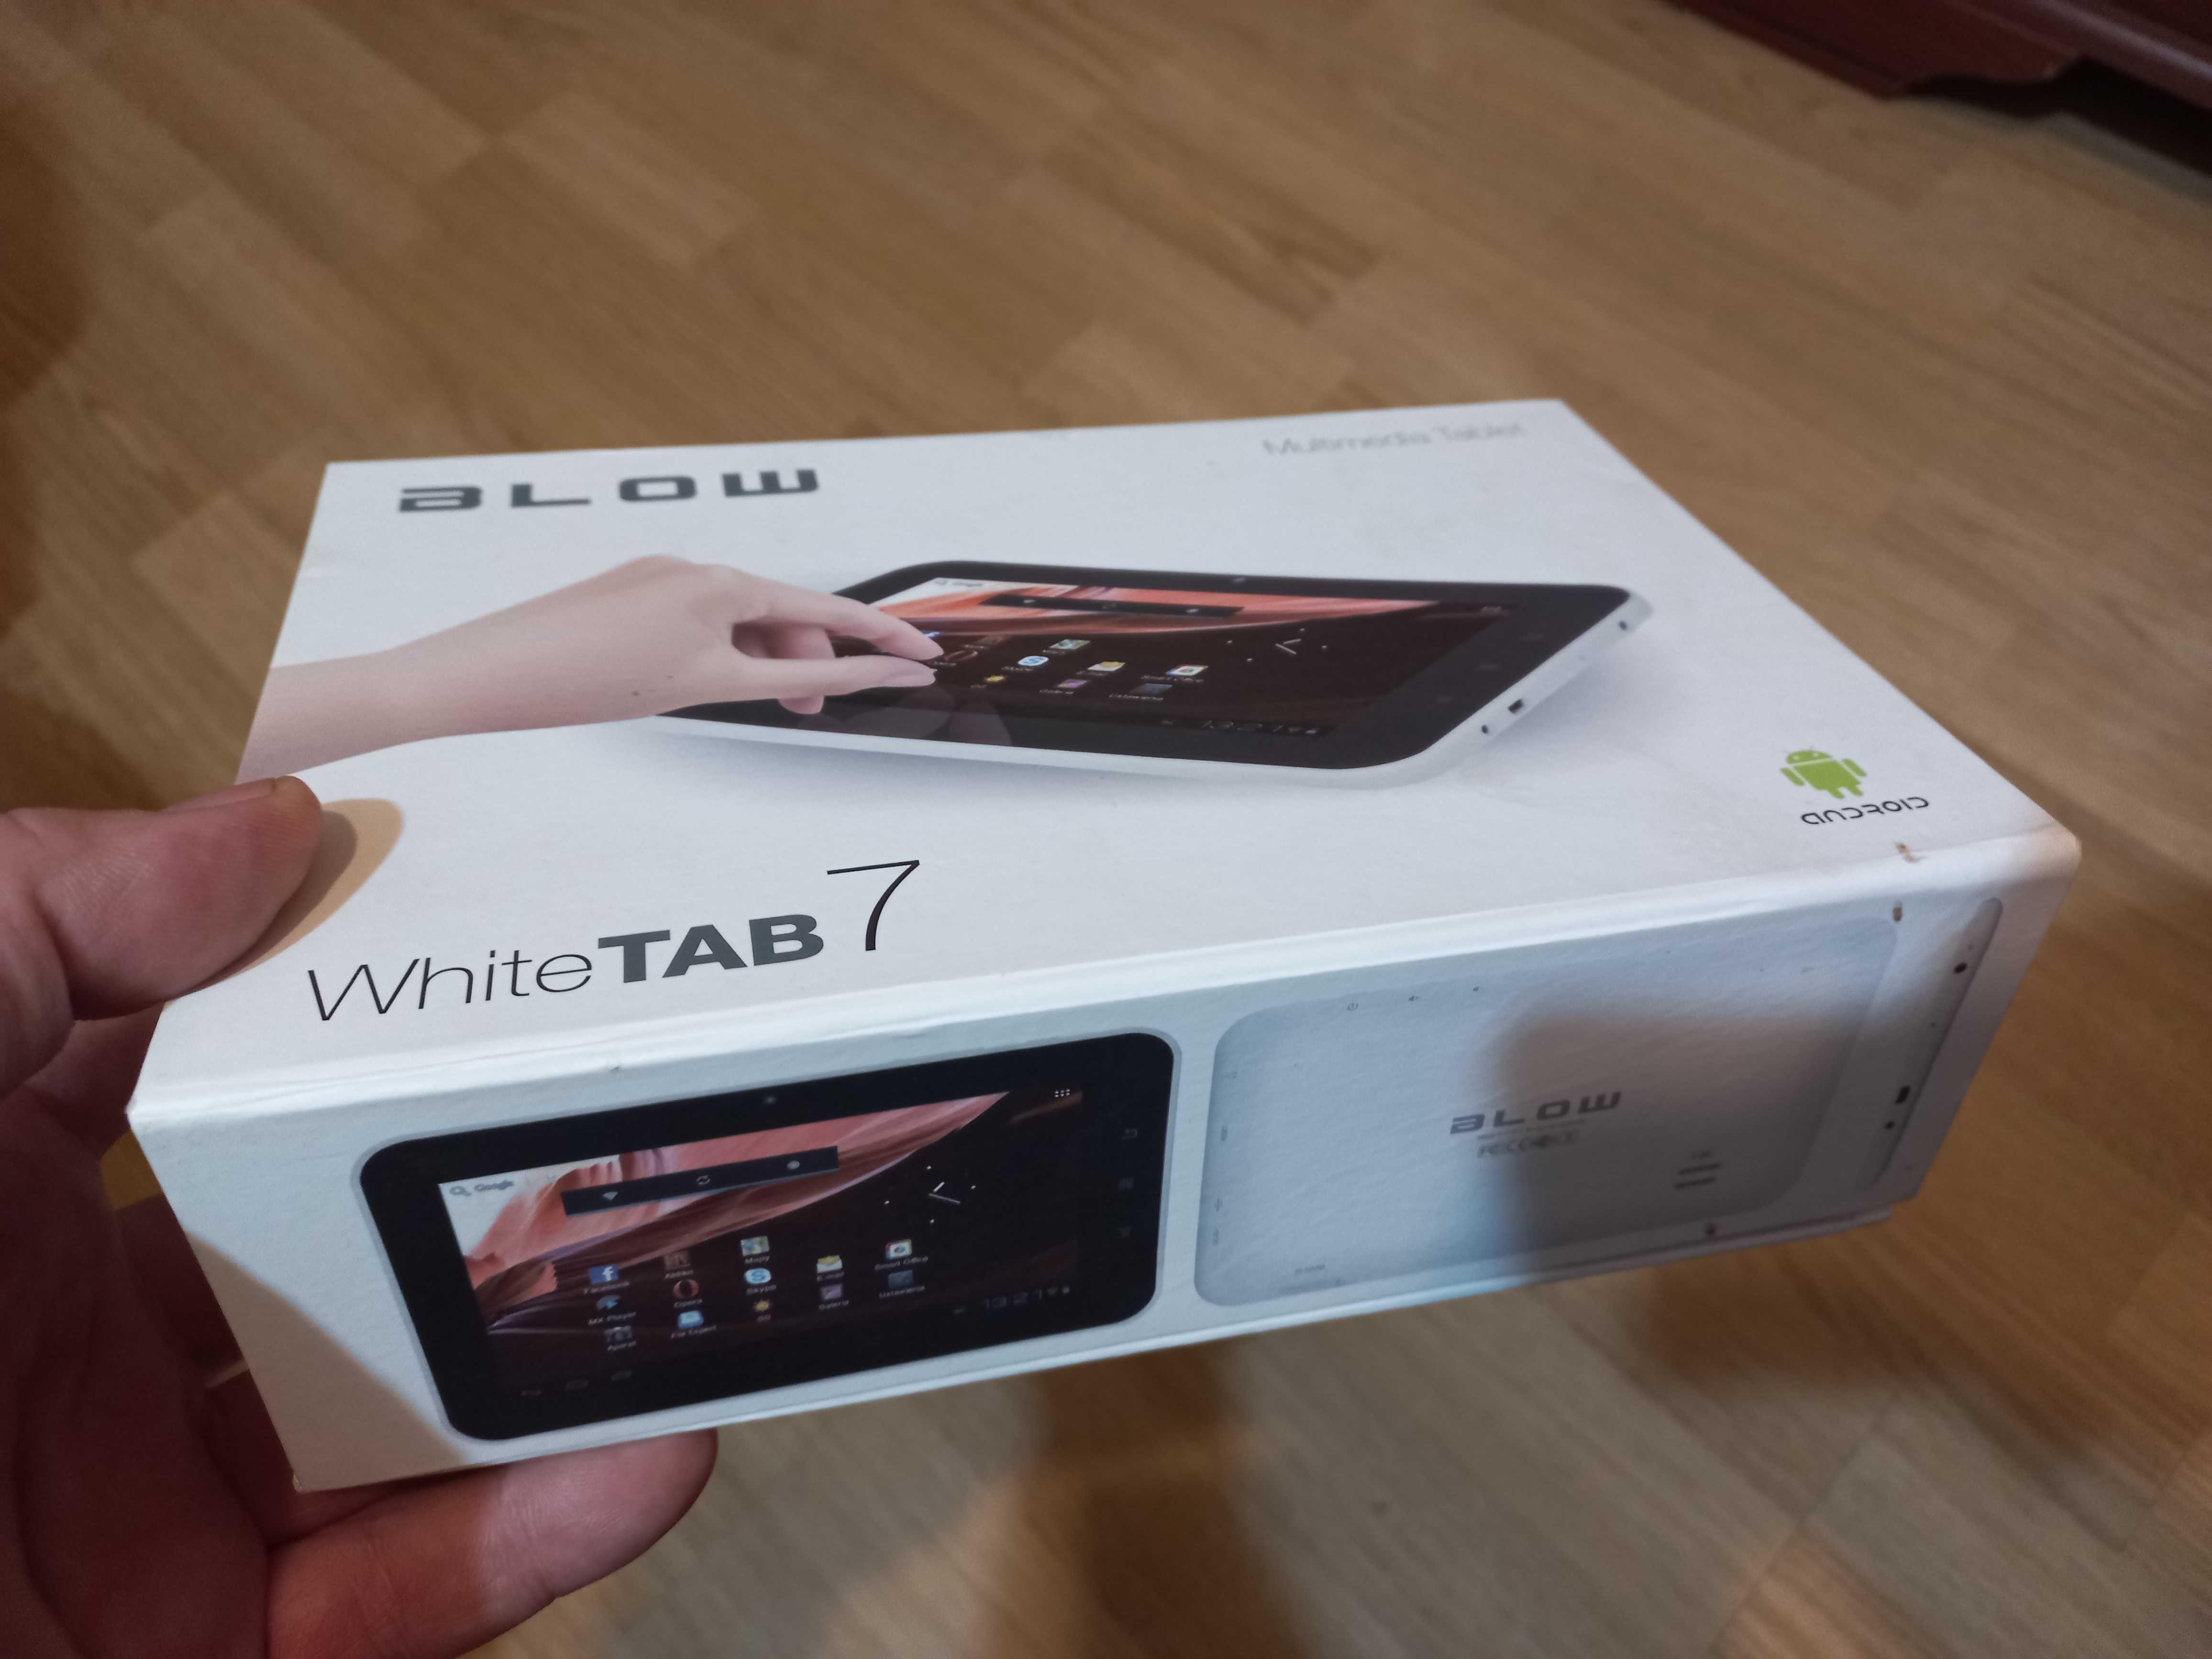 BLOW WhiteTAB7 Tablet  -OKAZJA !!!  bateria trzyma minutę